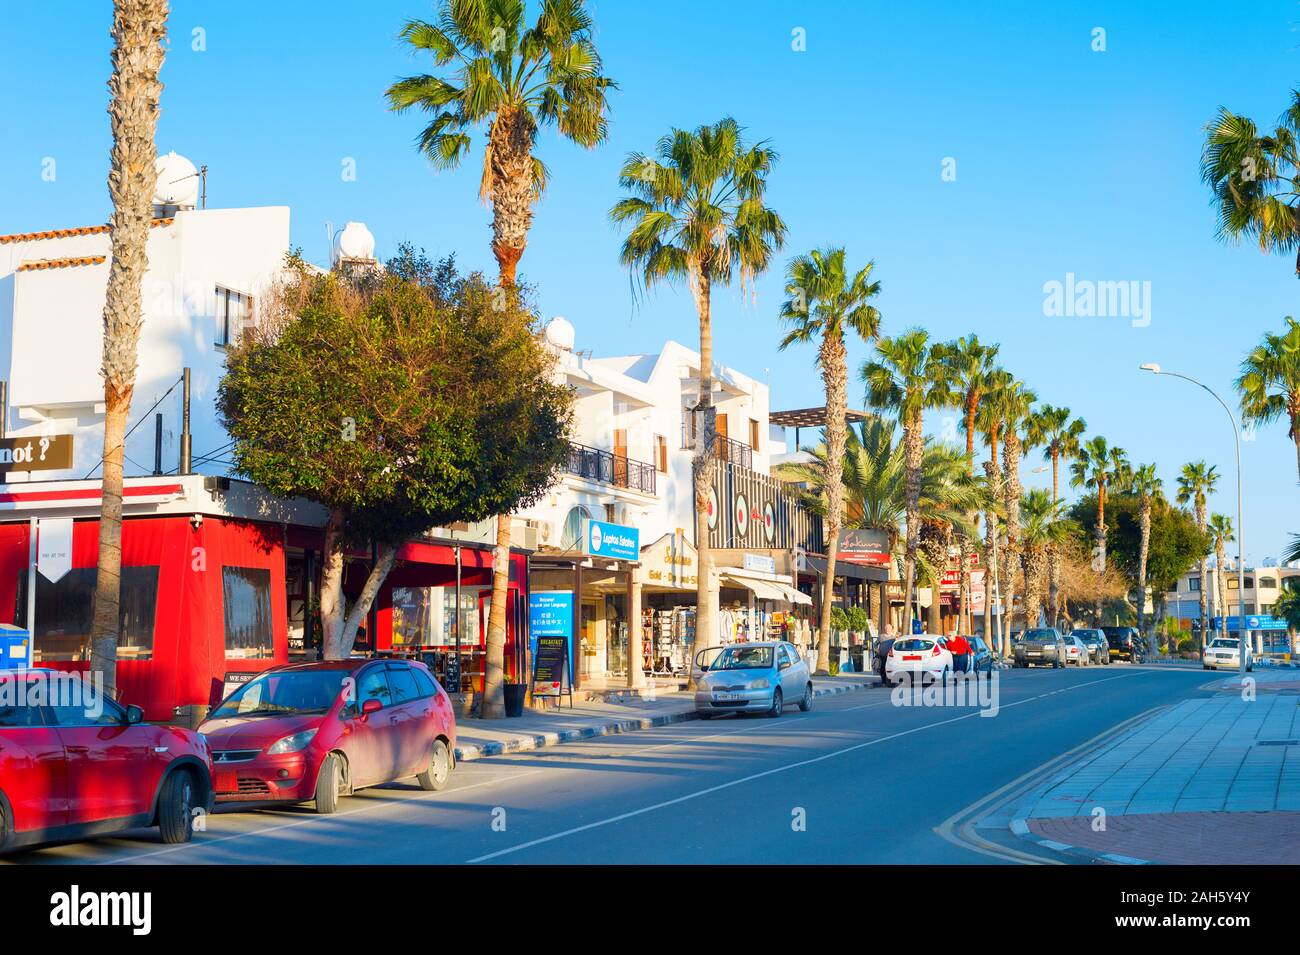 PAPHOS, Zypern - 13. FEBRUAR 2019: Einkaufsstraße entlang der Straße in Paphos, Zypern Stockfoto